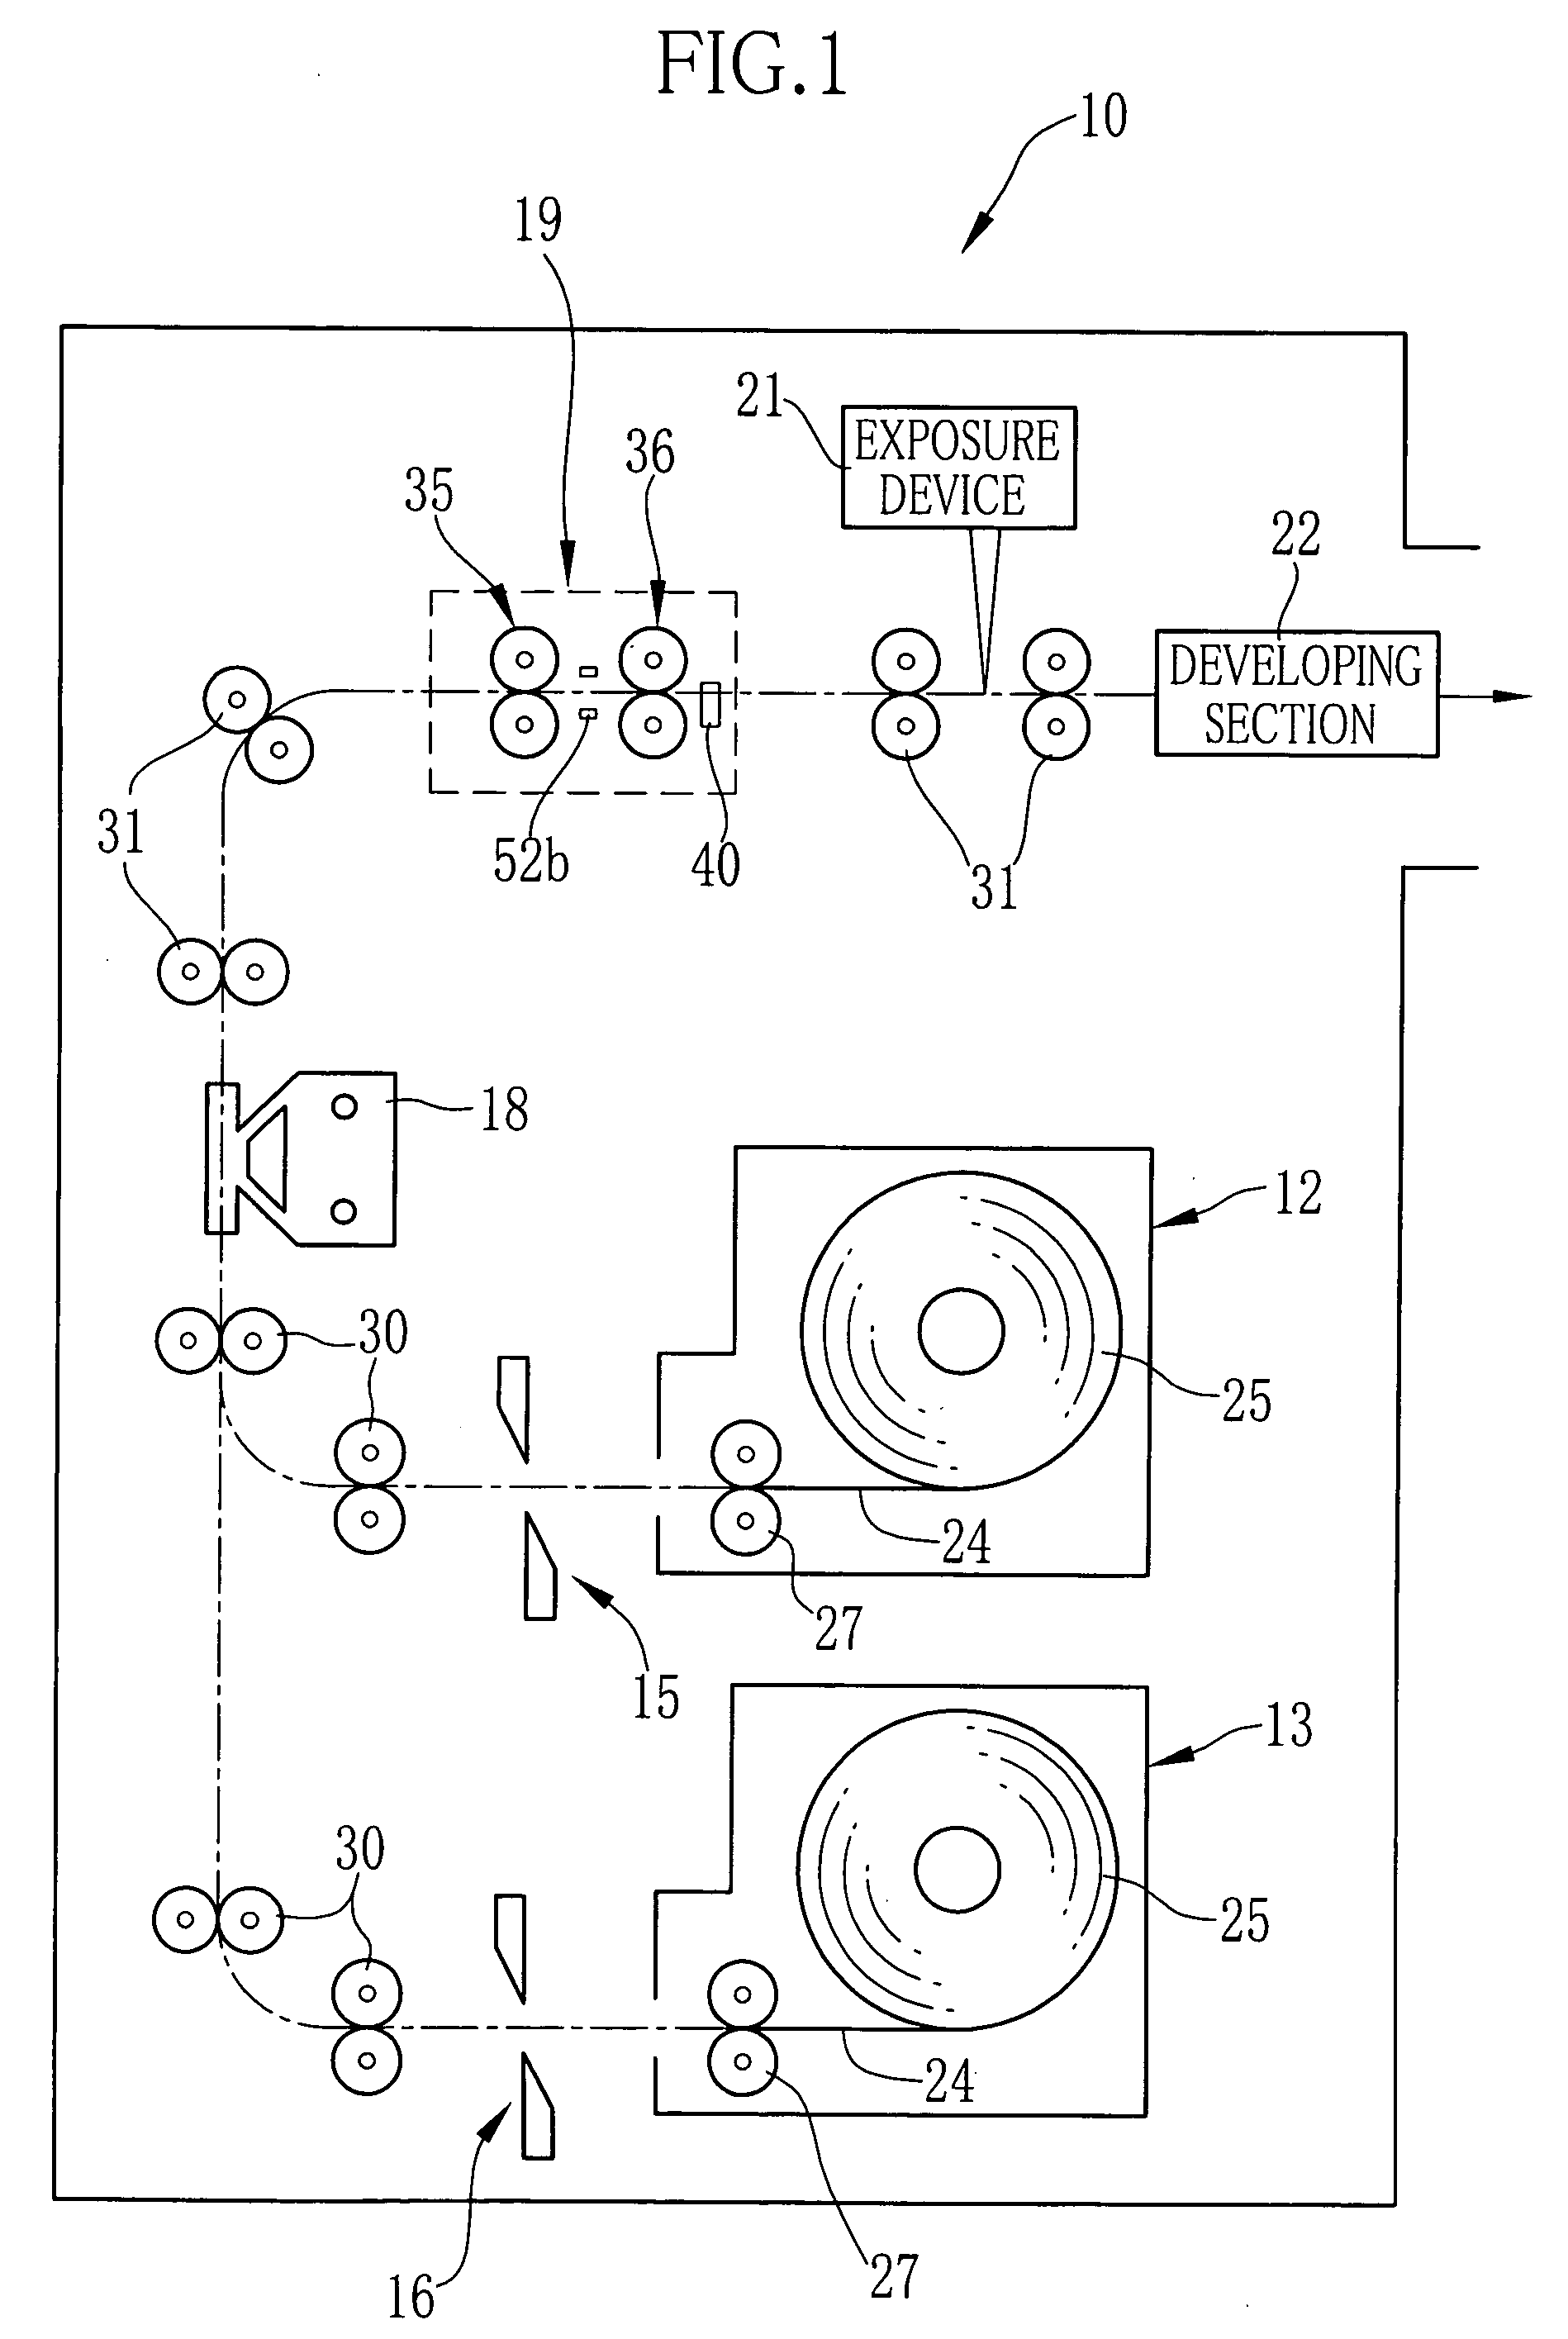 Conveyer and image recording apparatus